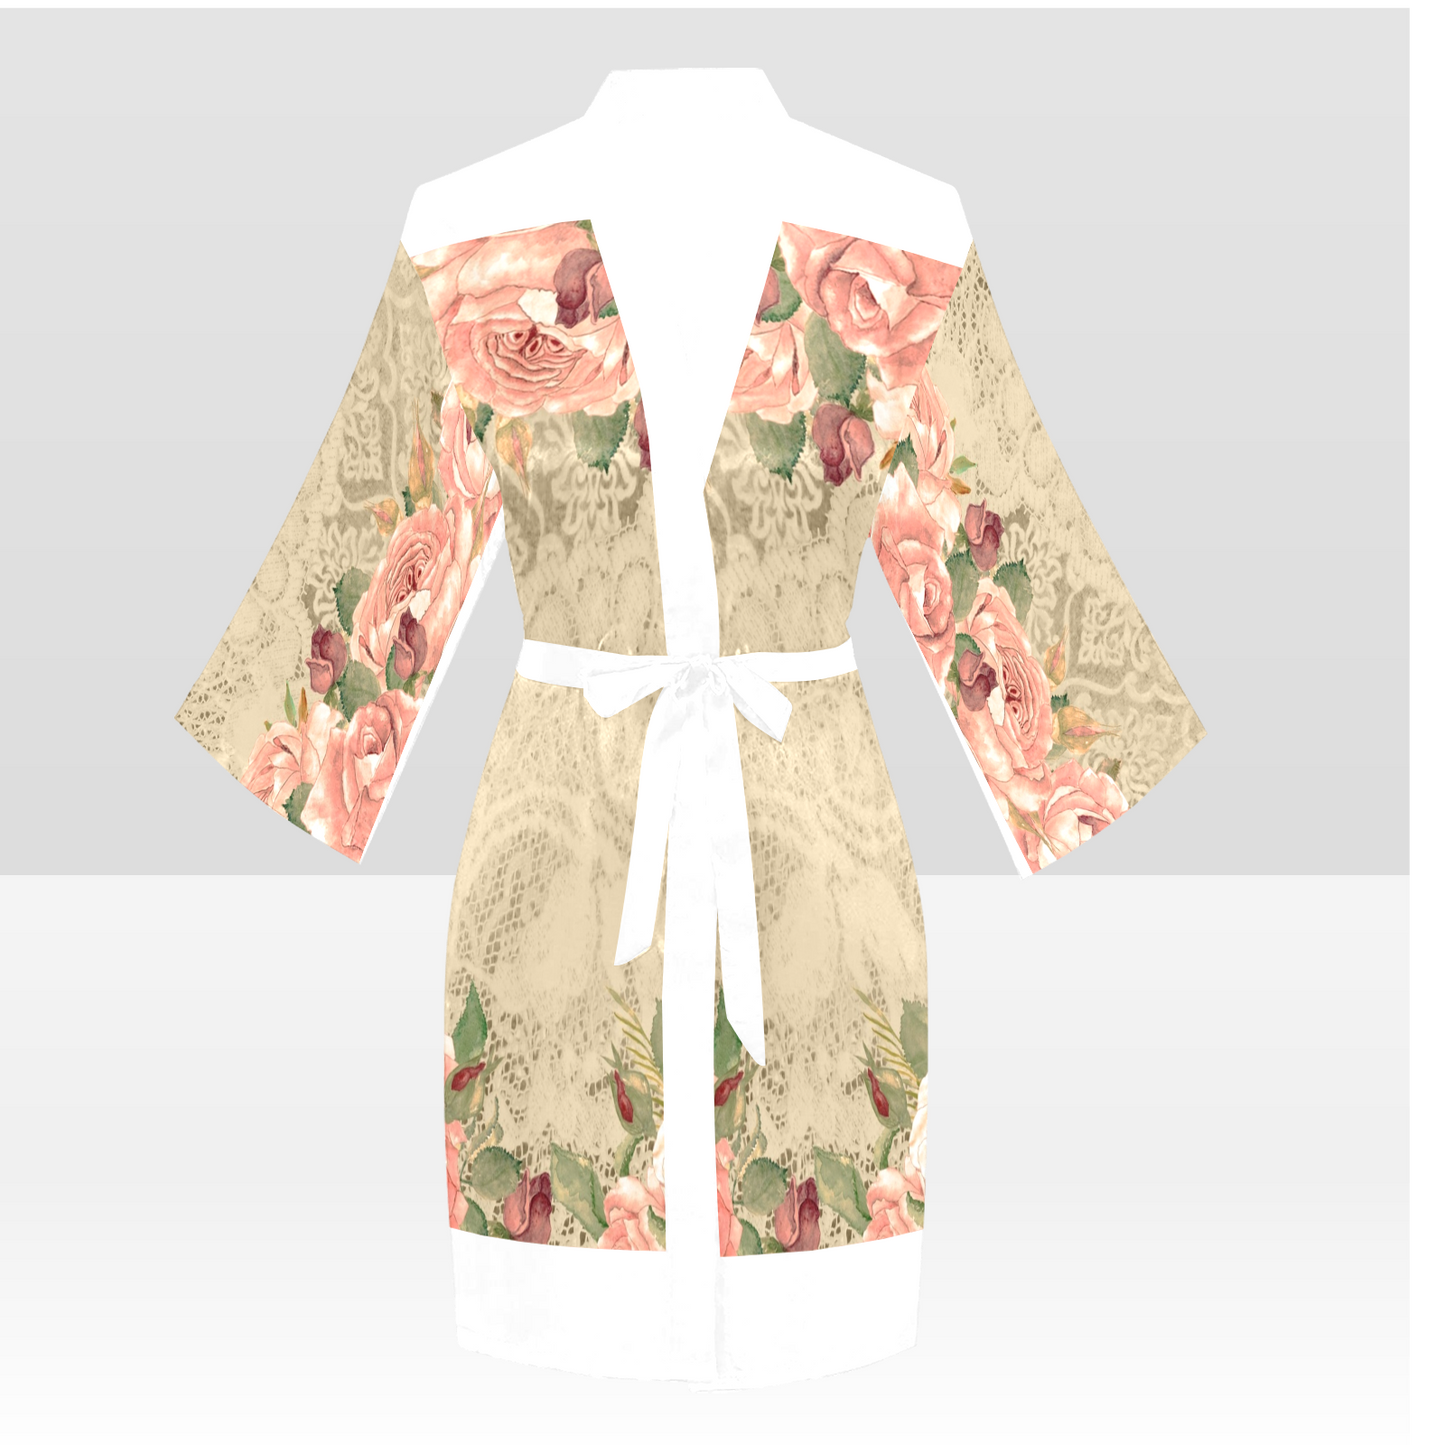 Victorian Lace Kimono Robe, Black or White Trim, Sizes XS to 2XL, Design 25